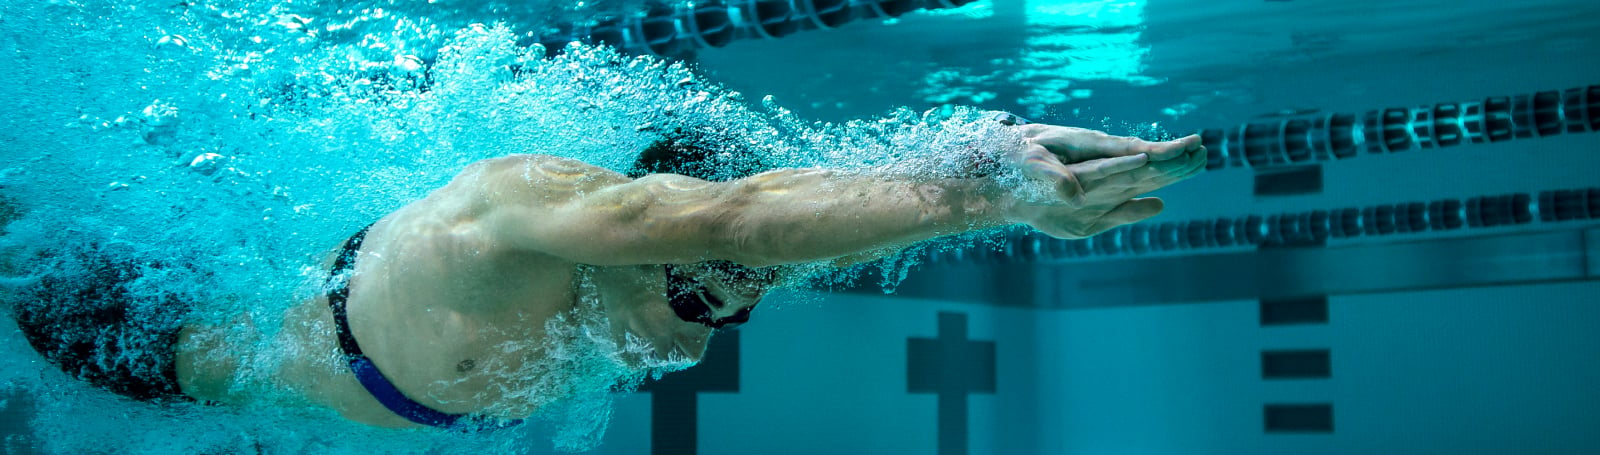 Montre natation : quelle montre connectée choisir pour nager ?